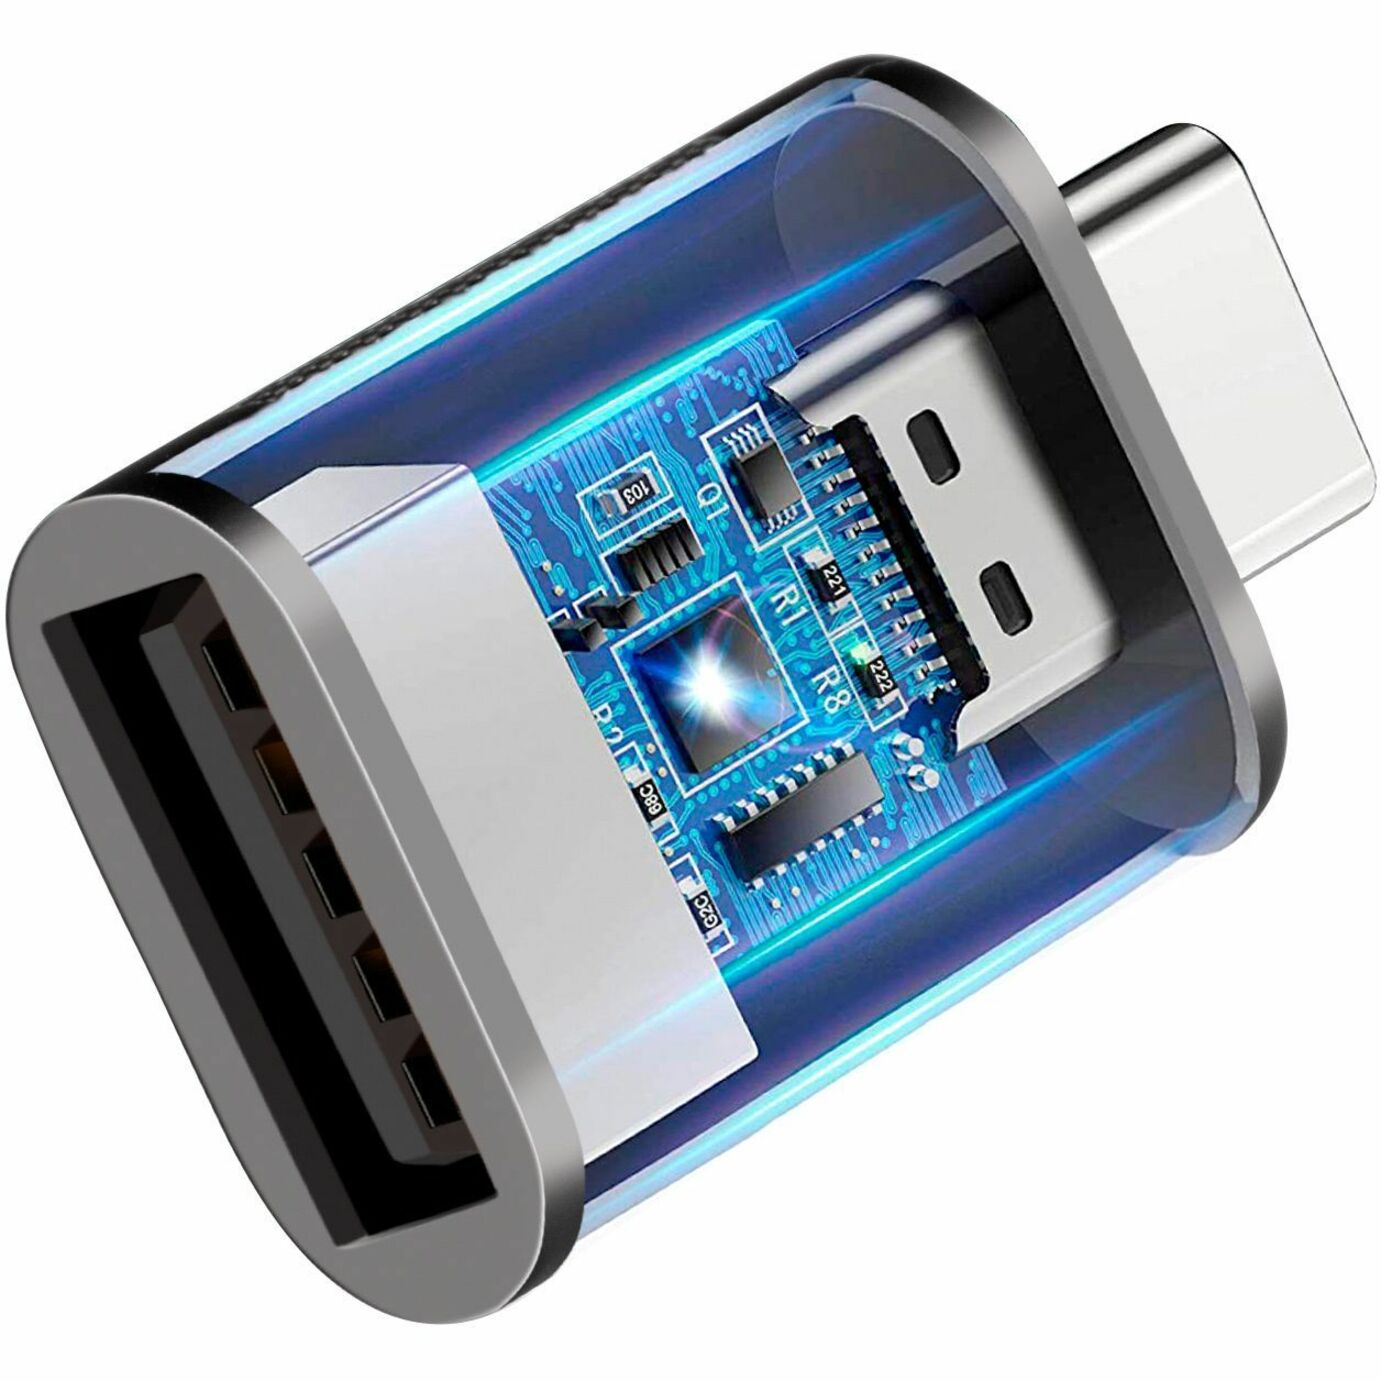 Adesso ADP-300-4 Femelle USB-A vers Mâle USB-C Adaptateurs (4 pack) Adaptateur de Transfert de Données